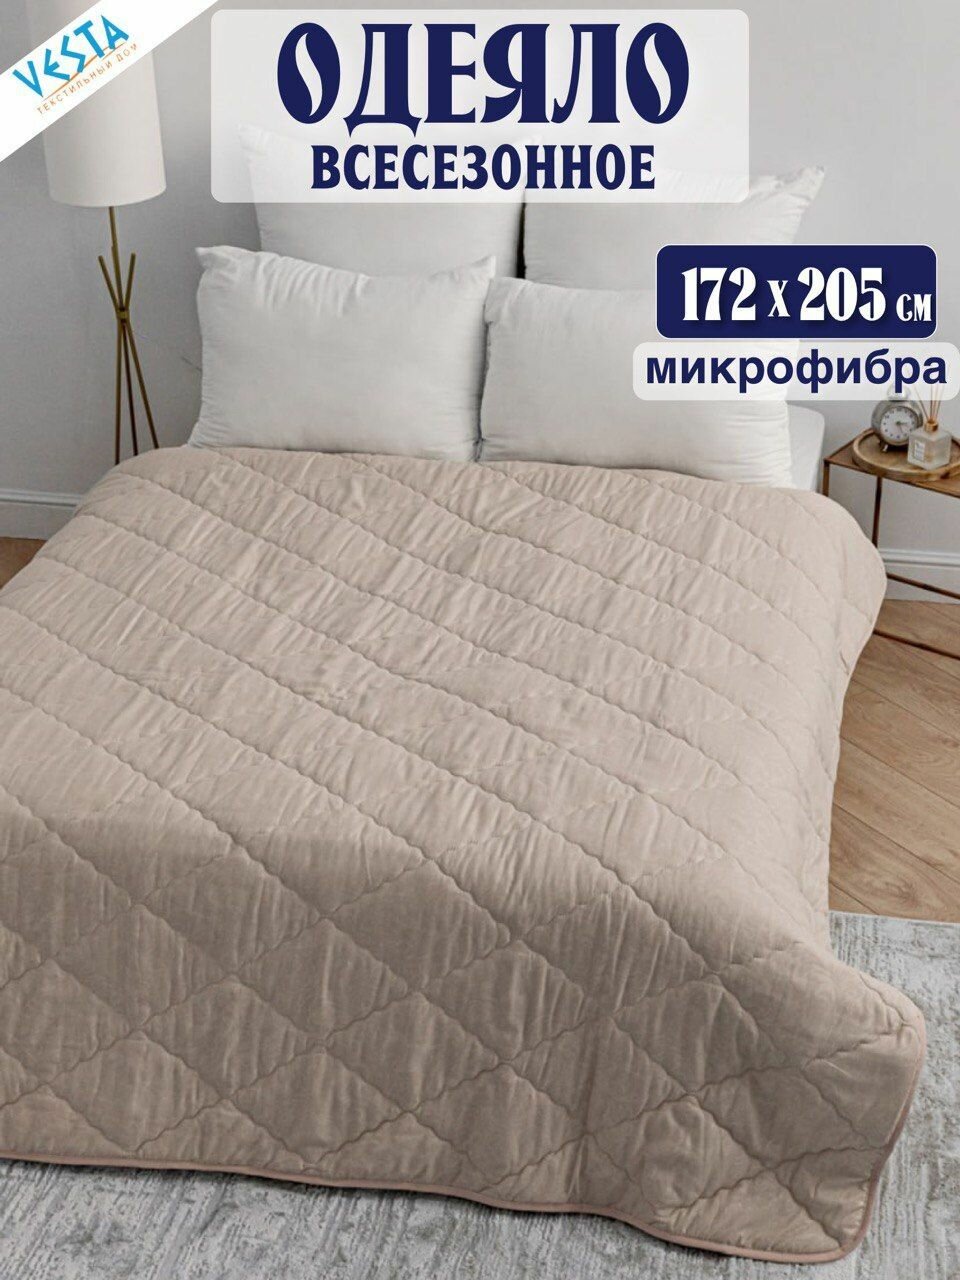 Одеяло Vesta всесезонное слоновая кость 2-спальное с наполнителем микрофибра, одеяло двуспальное 172х205 см